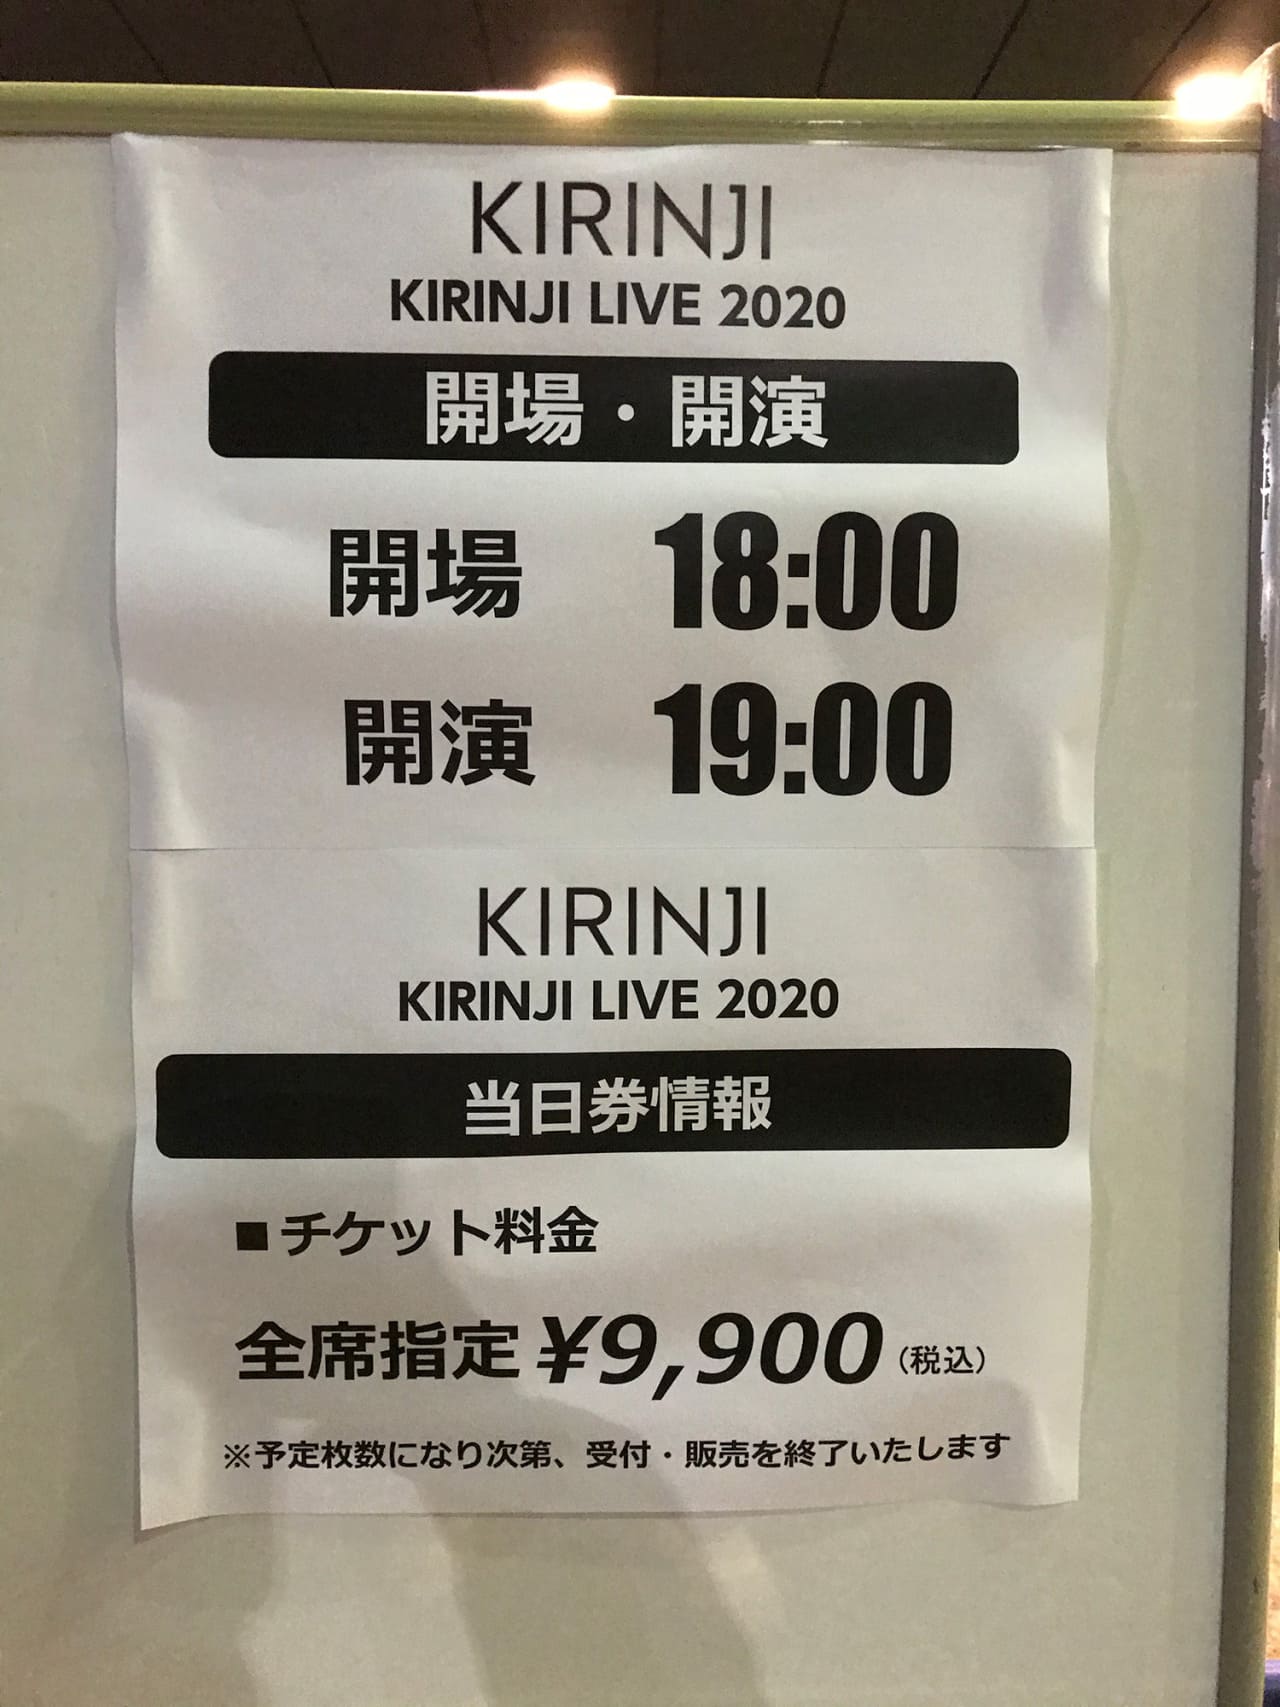 KIRINJI LIVE 2020